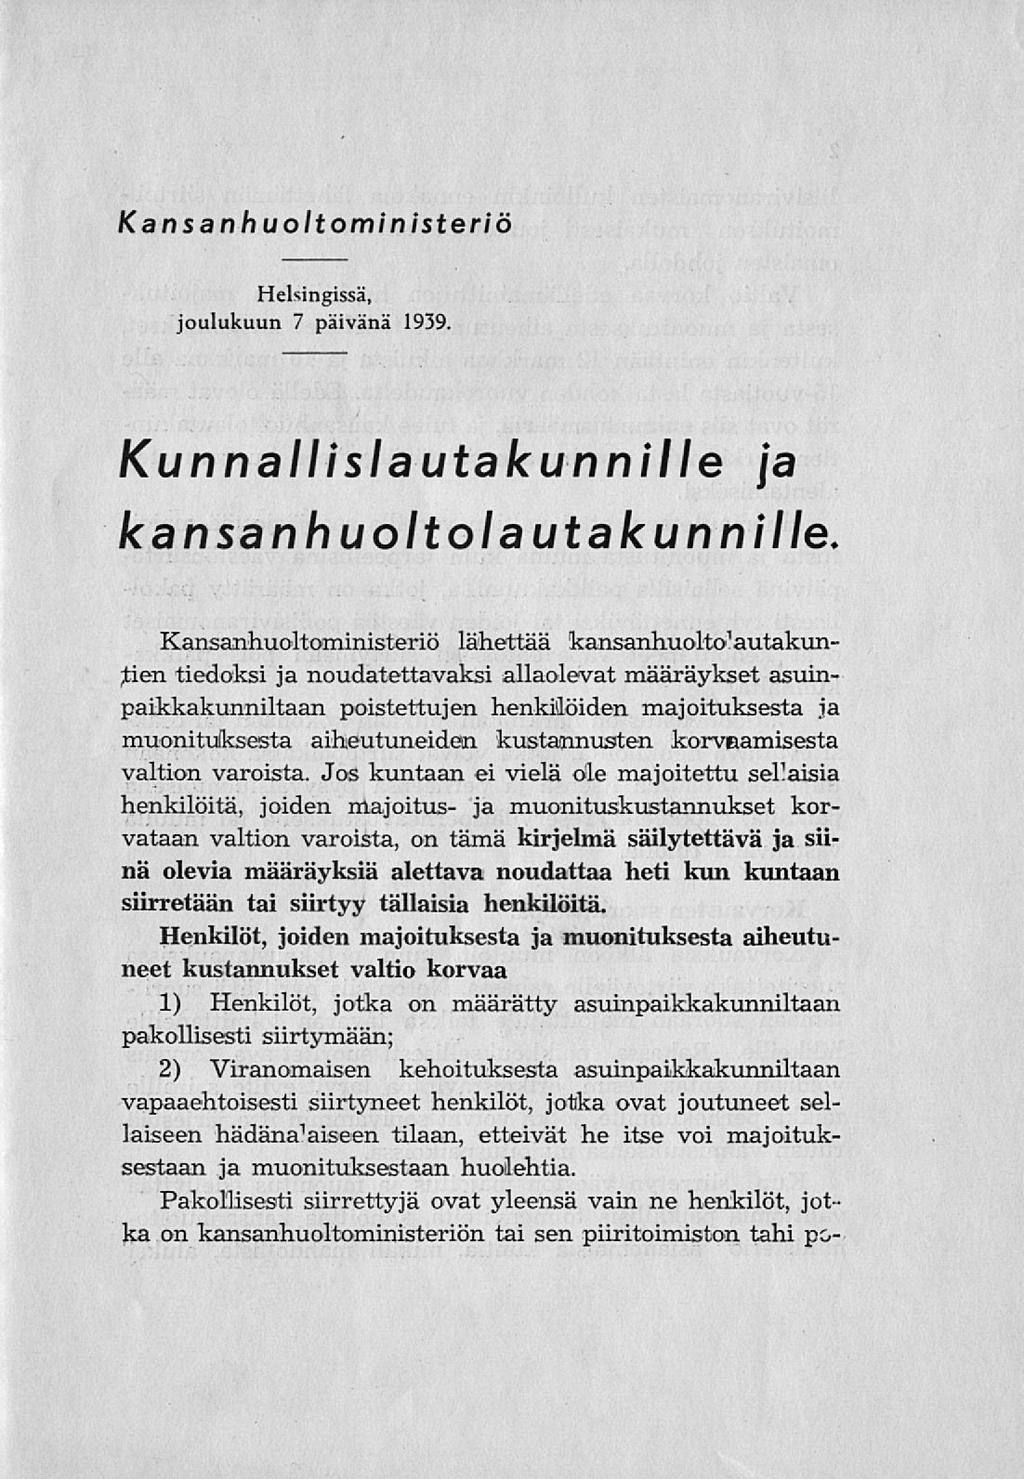 Kansanhuoltoministeriö Helsingissä, joulukuun 7 päivänä 1939. Kunnallislautakunnille ja kansanhuoltolautakunnille.